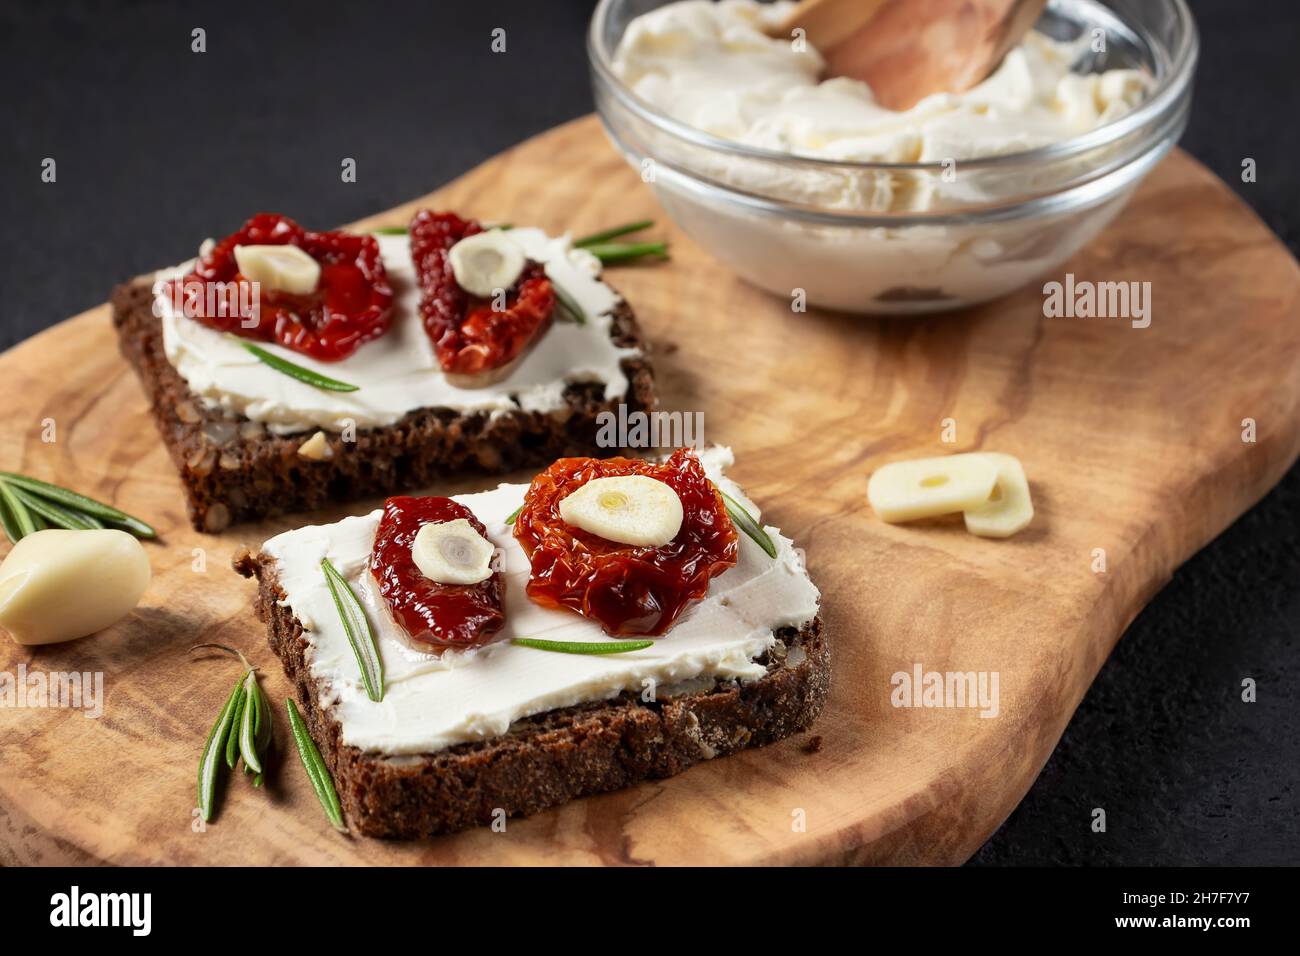 Des sandwichs au pain multigrain faits maison avec fromage à la crème et tomates séchées sur un plateau en bois. Concept de saine alimentation Banque D'Images